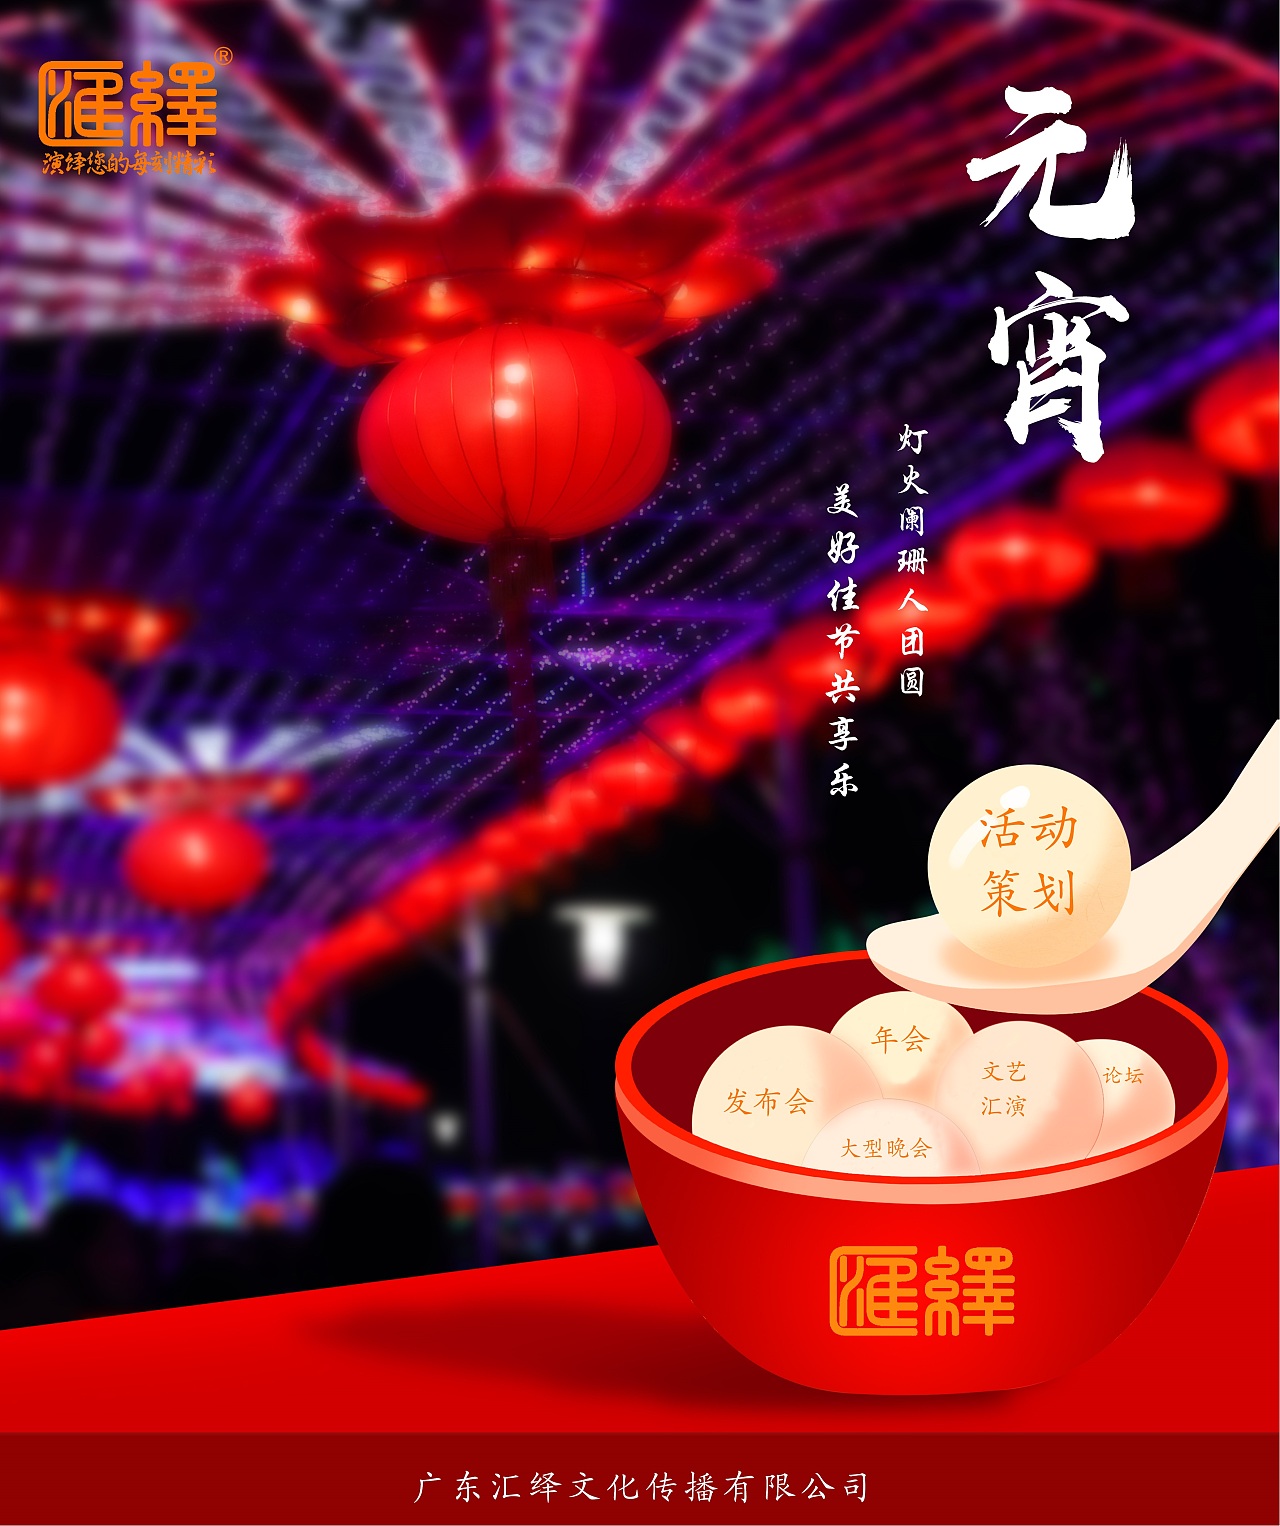 红金色正月十五元宵汤圆照片元宵节节日宣传中文海报 - 模板 - Canva可画